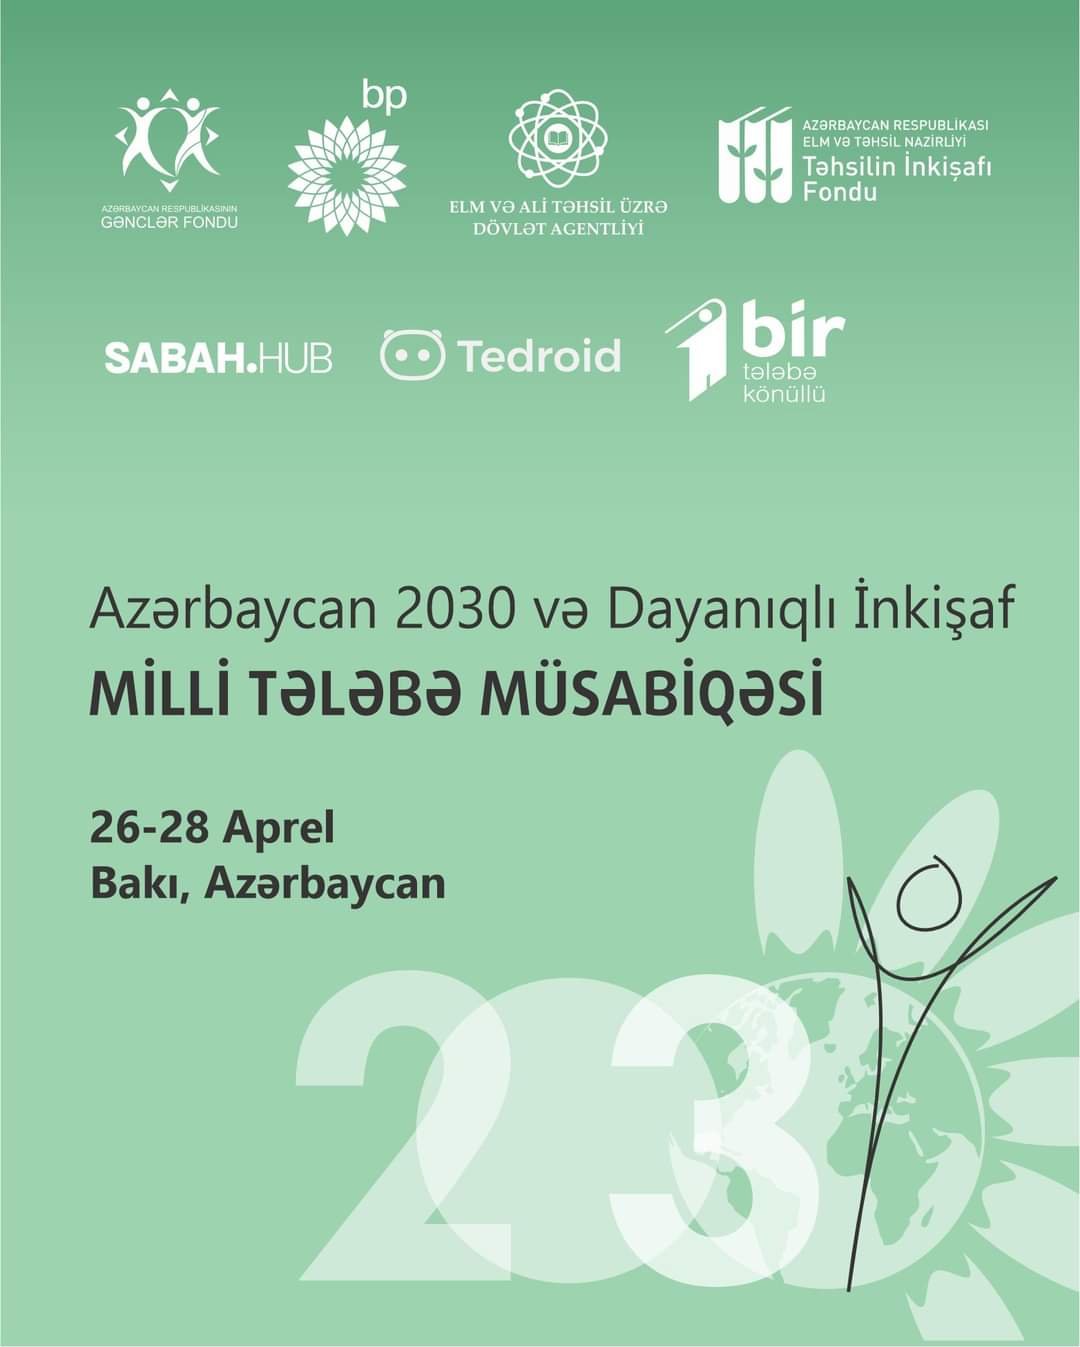 “Azərbaycan 2030 və Dayanıqlı İnkişaf” Milli Tələbə Müsabiqəsi elan edilir